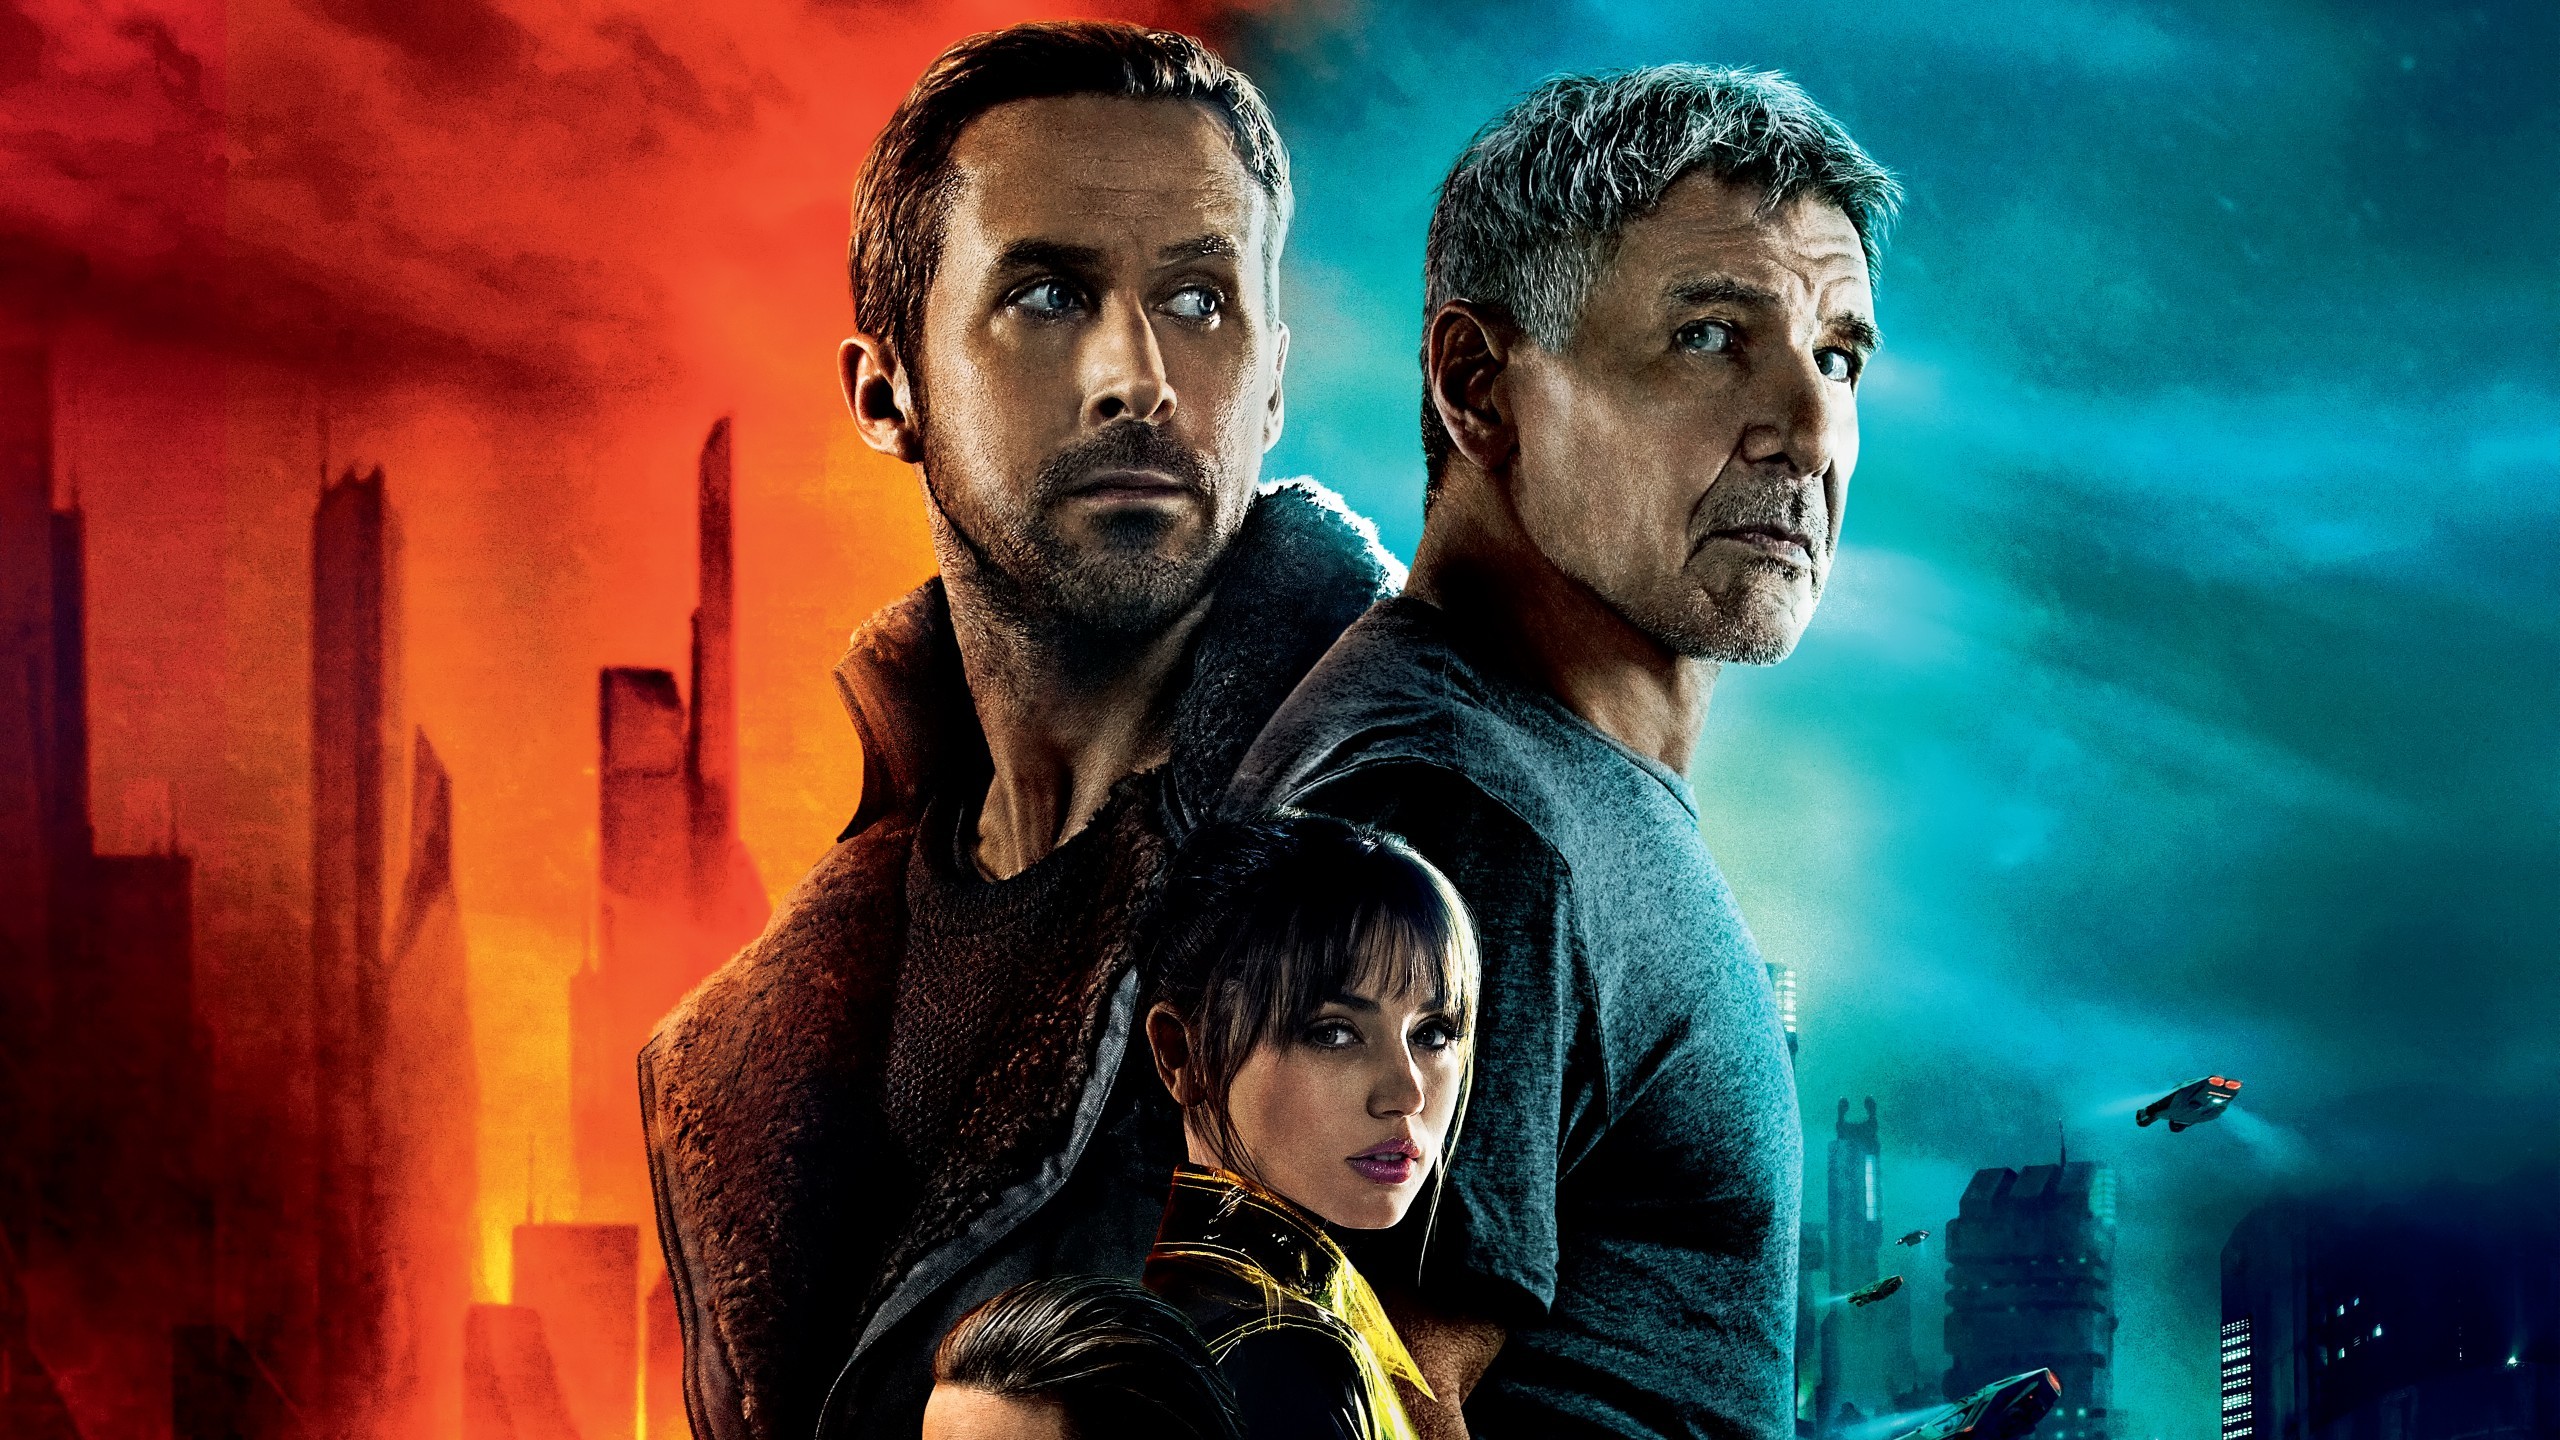 2560x1440 Movies / Blade Runner 2049 Wallpaper